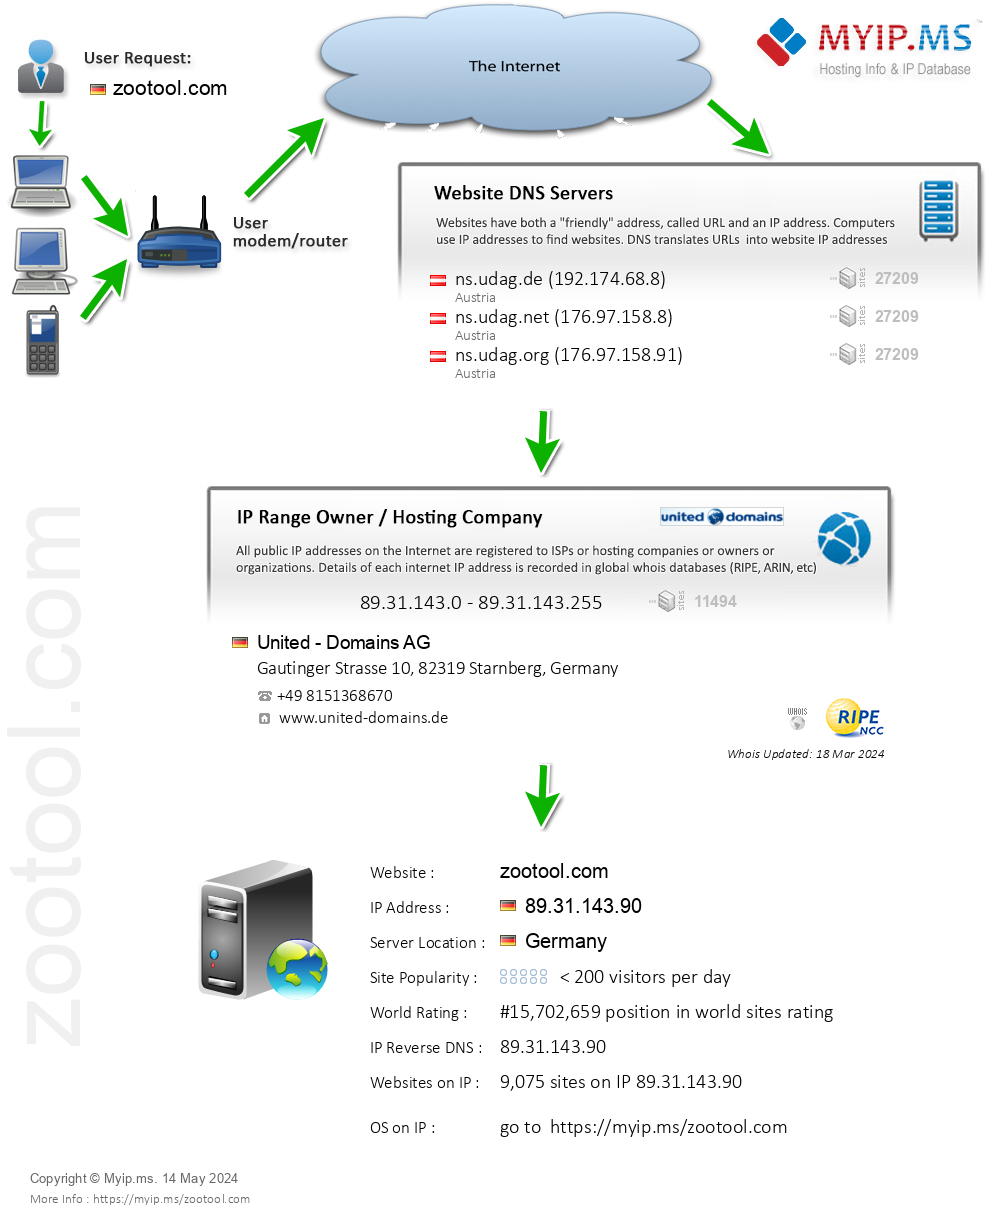 Zootool.com - Website Hosting Visual IP Diagram